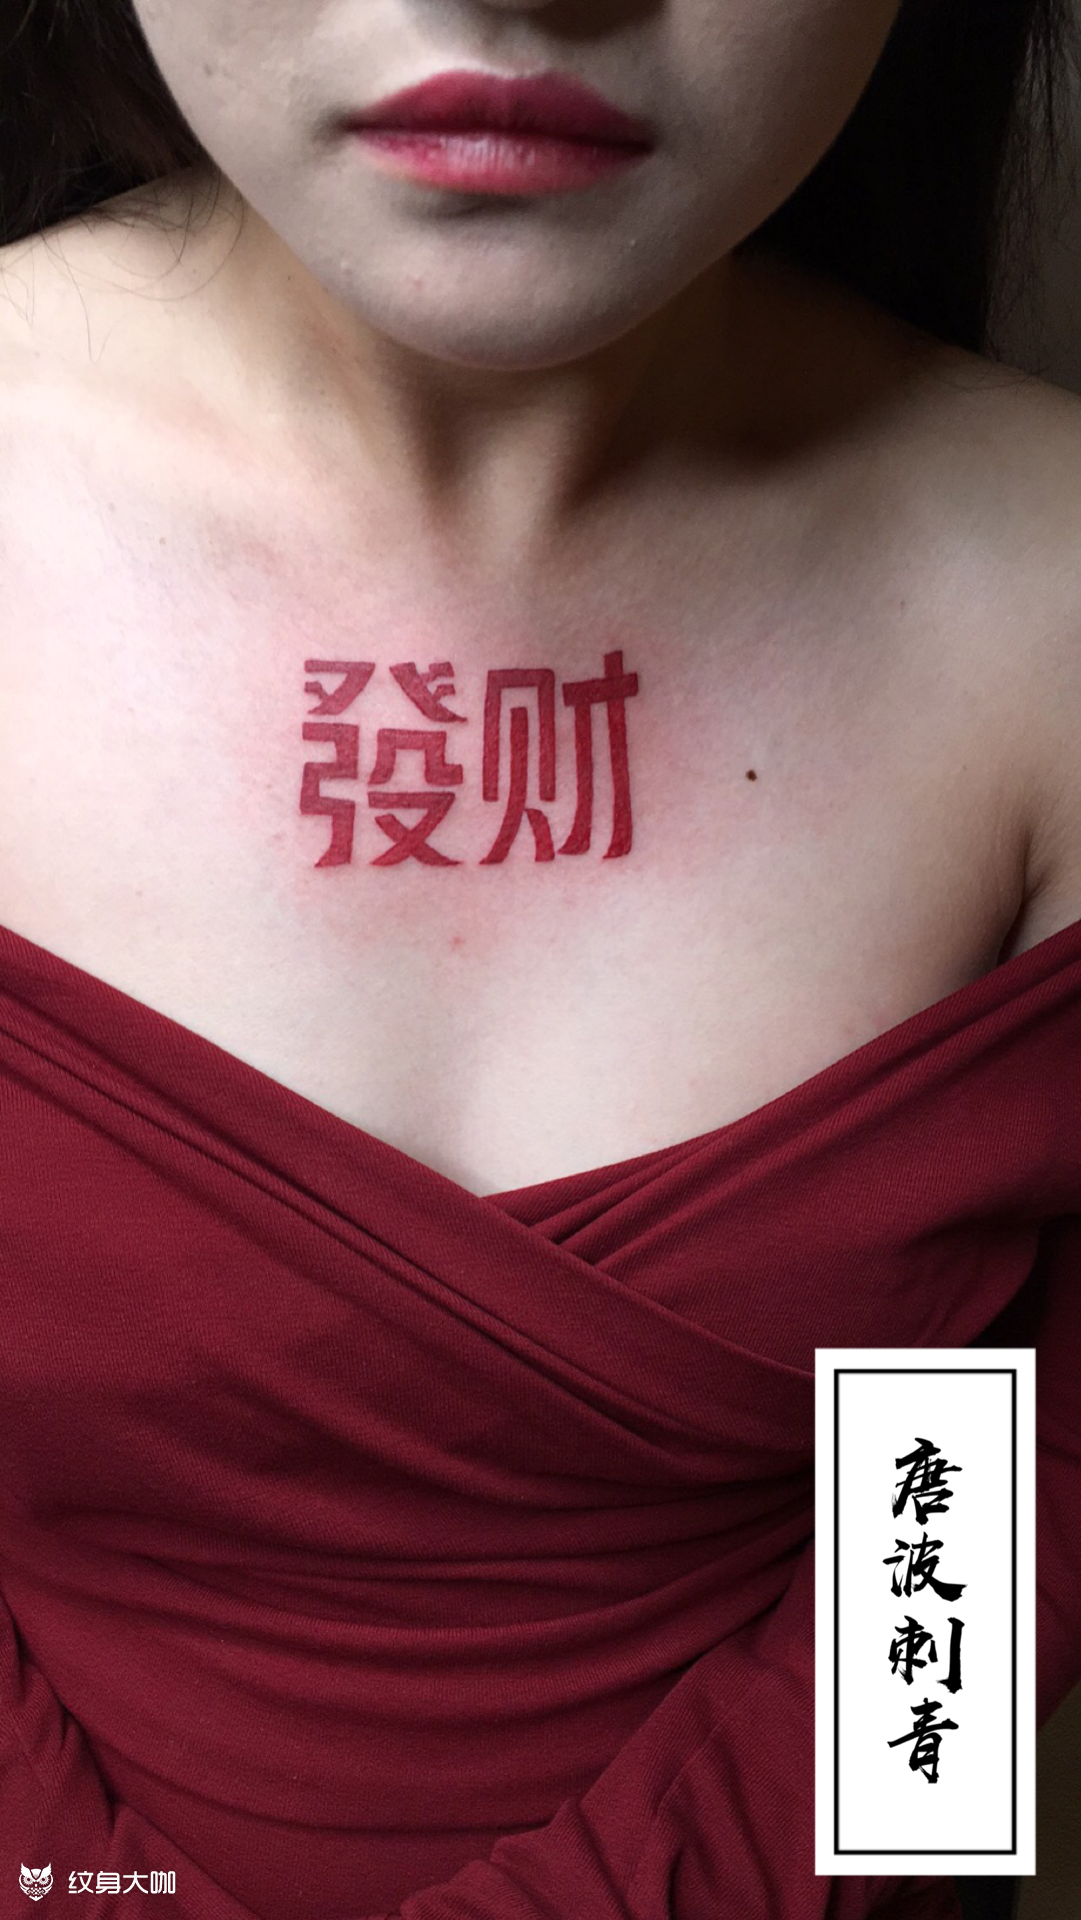 代表财运的纹身图案女图片